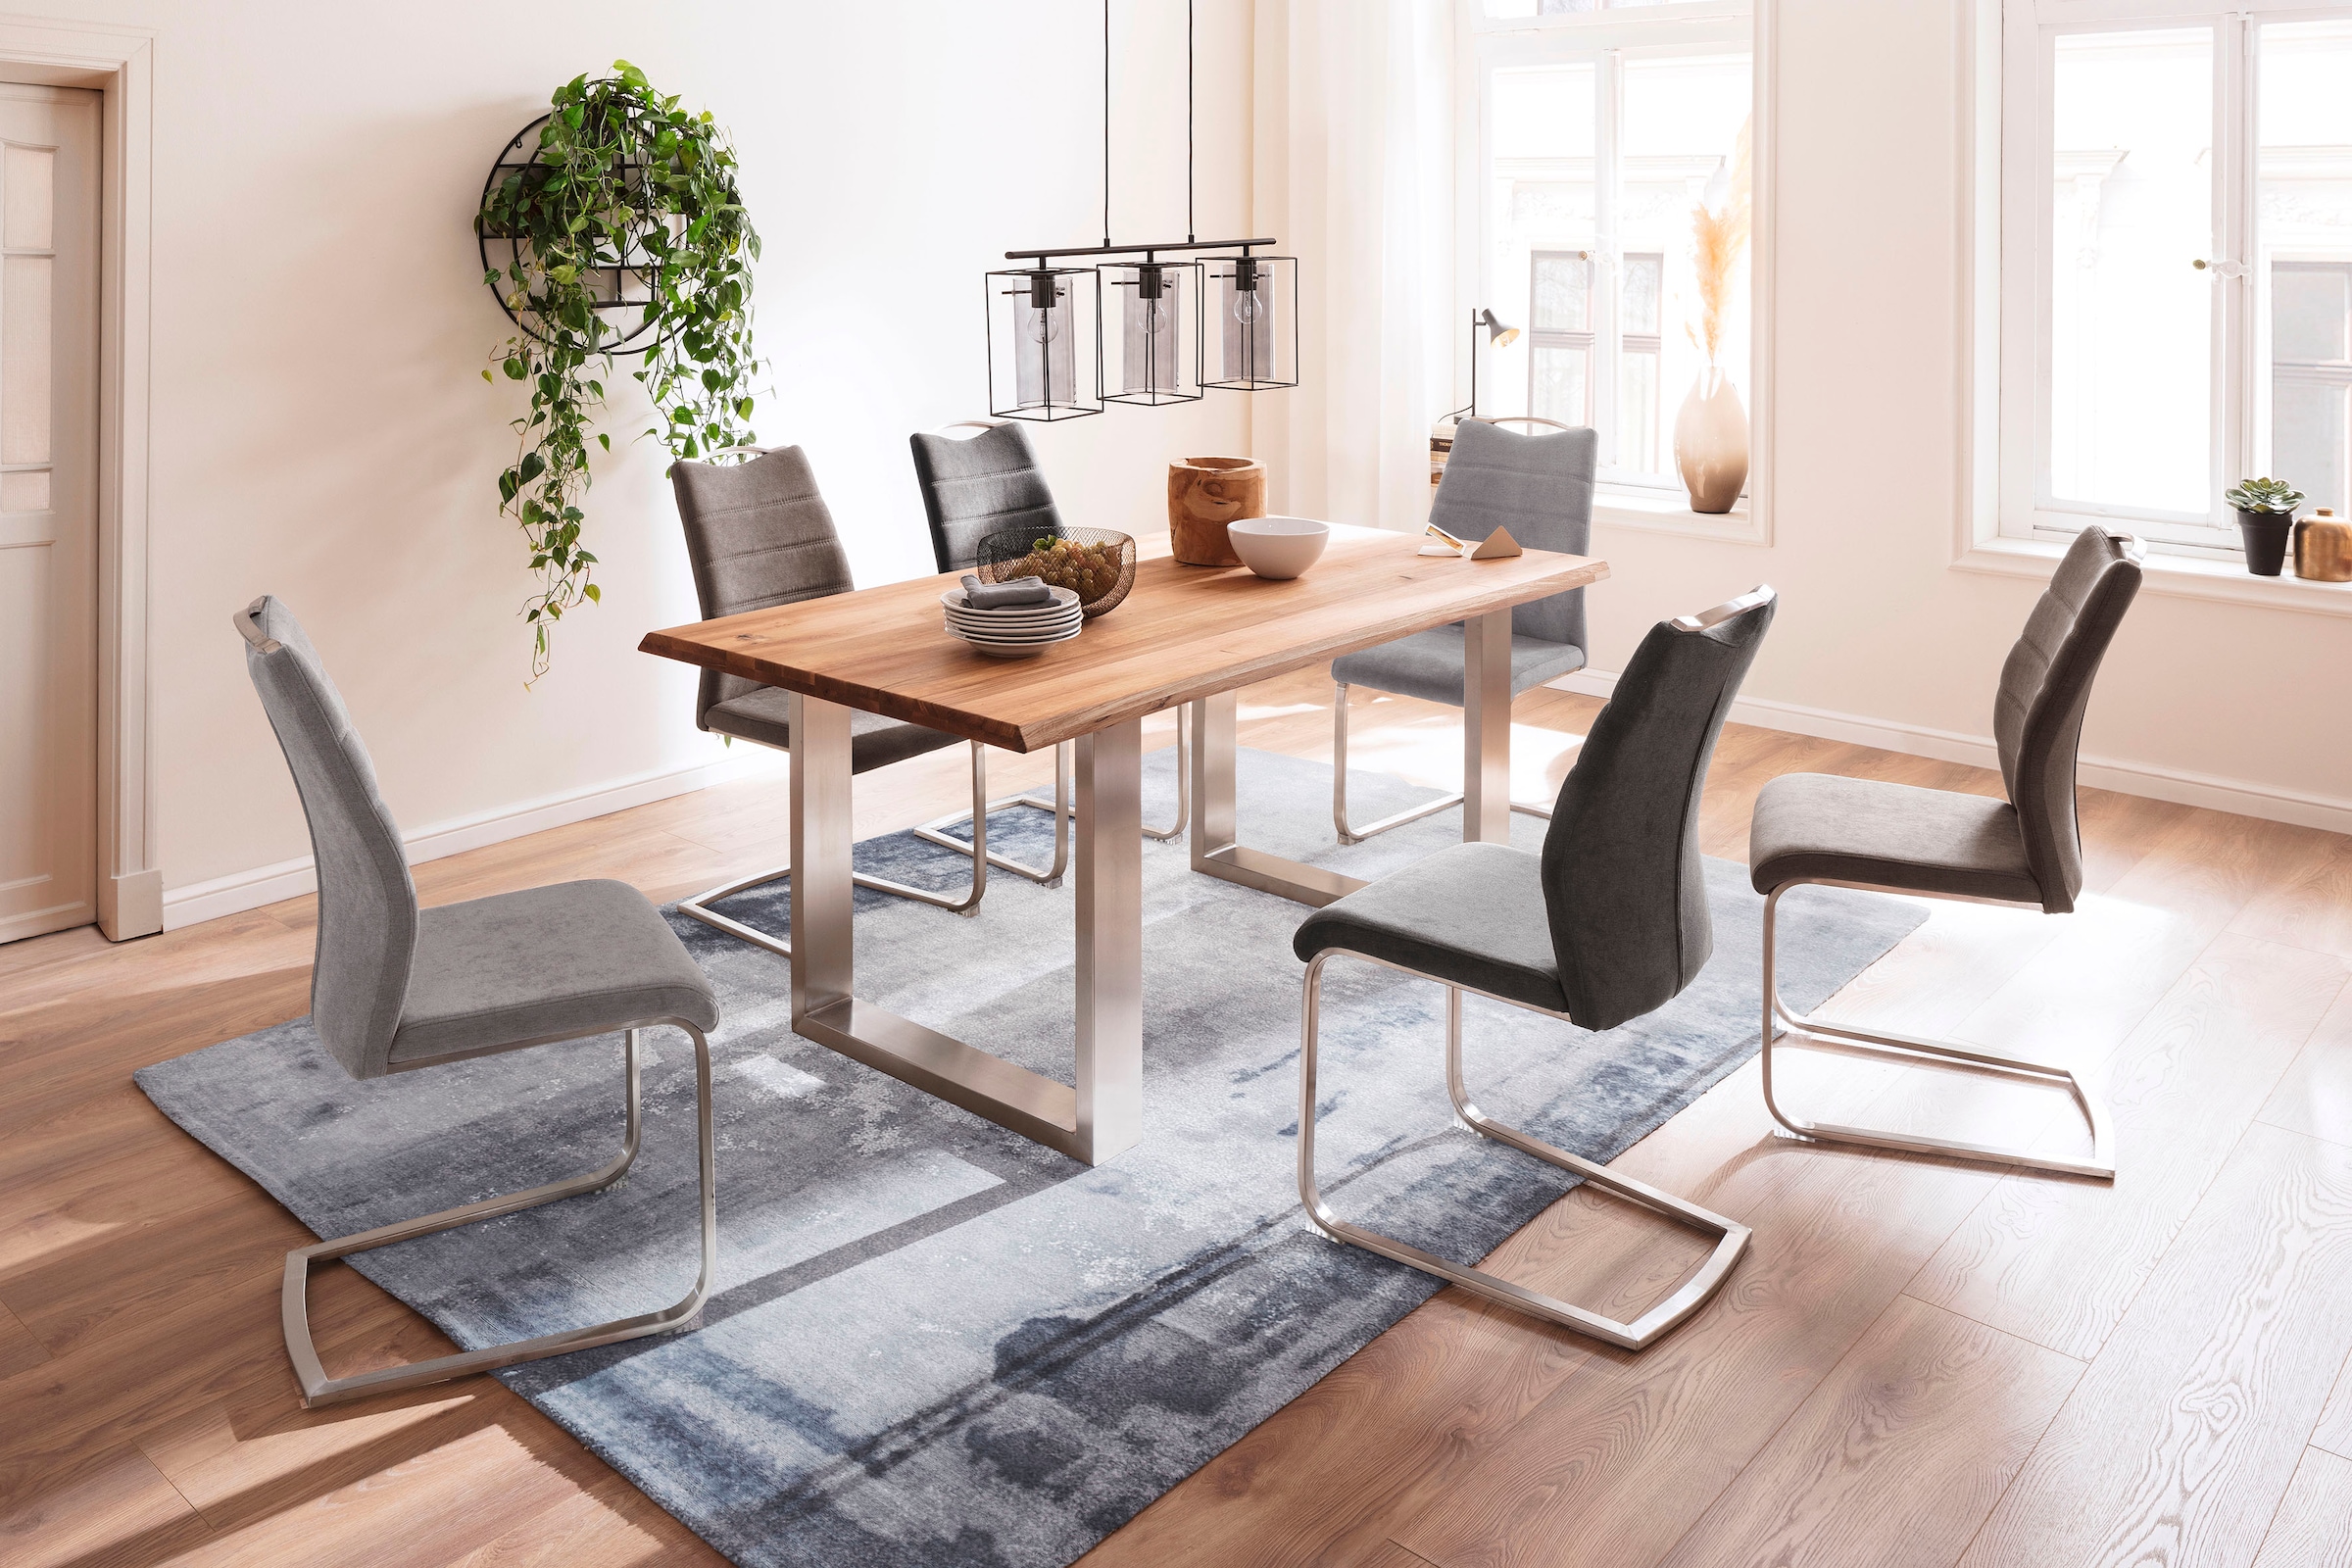 MCA furniture Esstisch »Greta«, Esstisch Massivholz mit Baumkante oder grader Kante